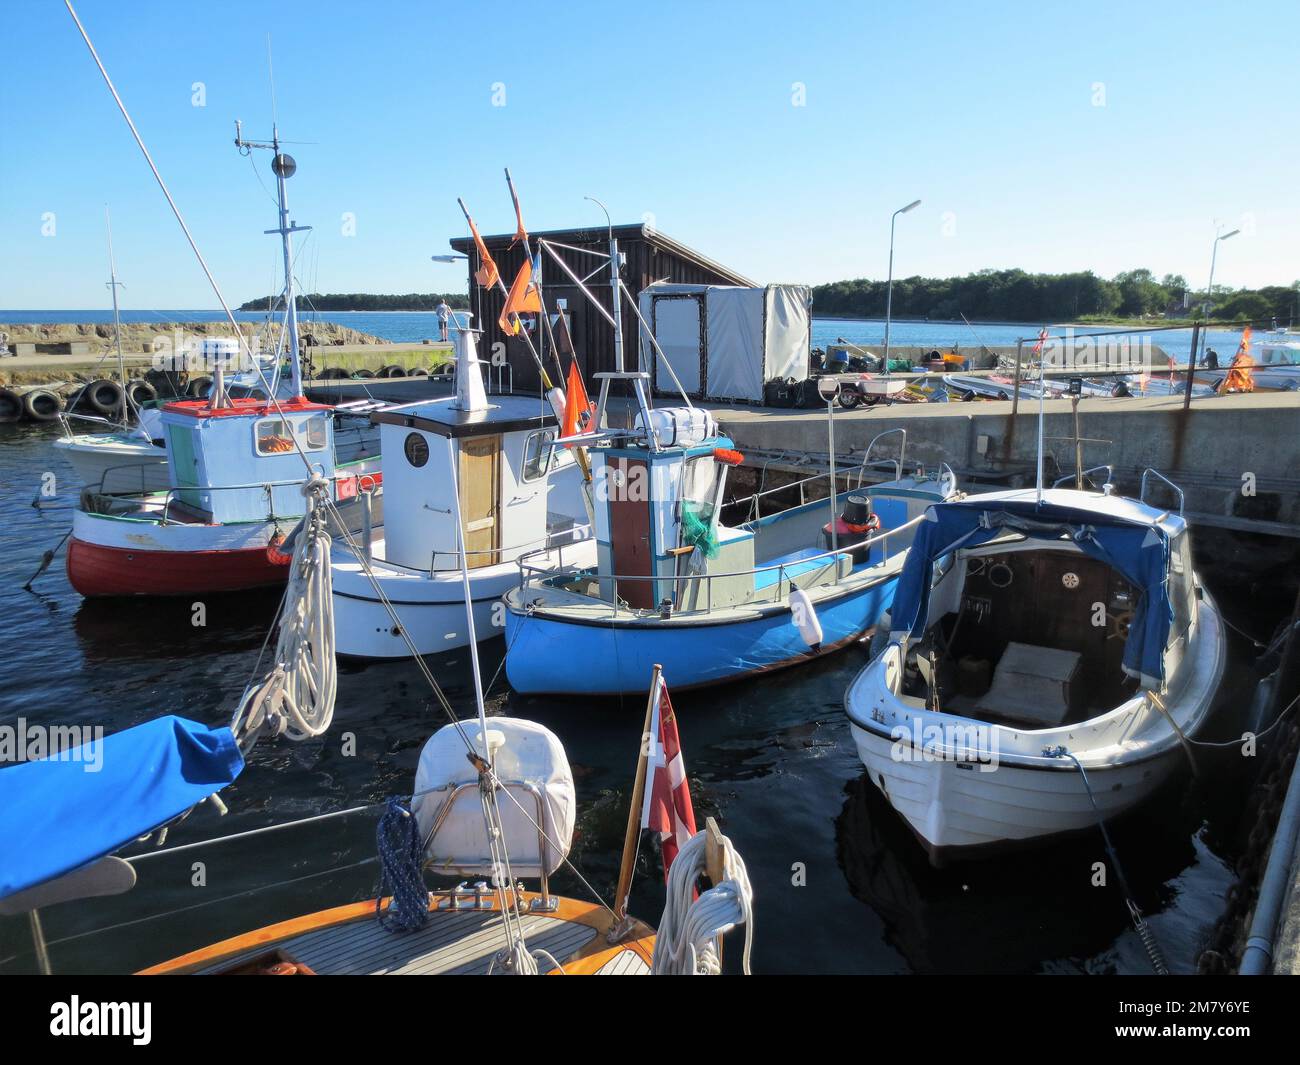 jolis petits bateaux de pêche colorés dans un port Banque D'Images